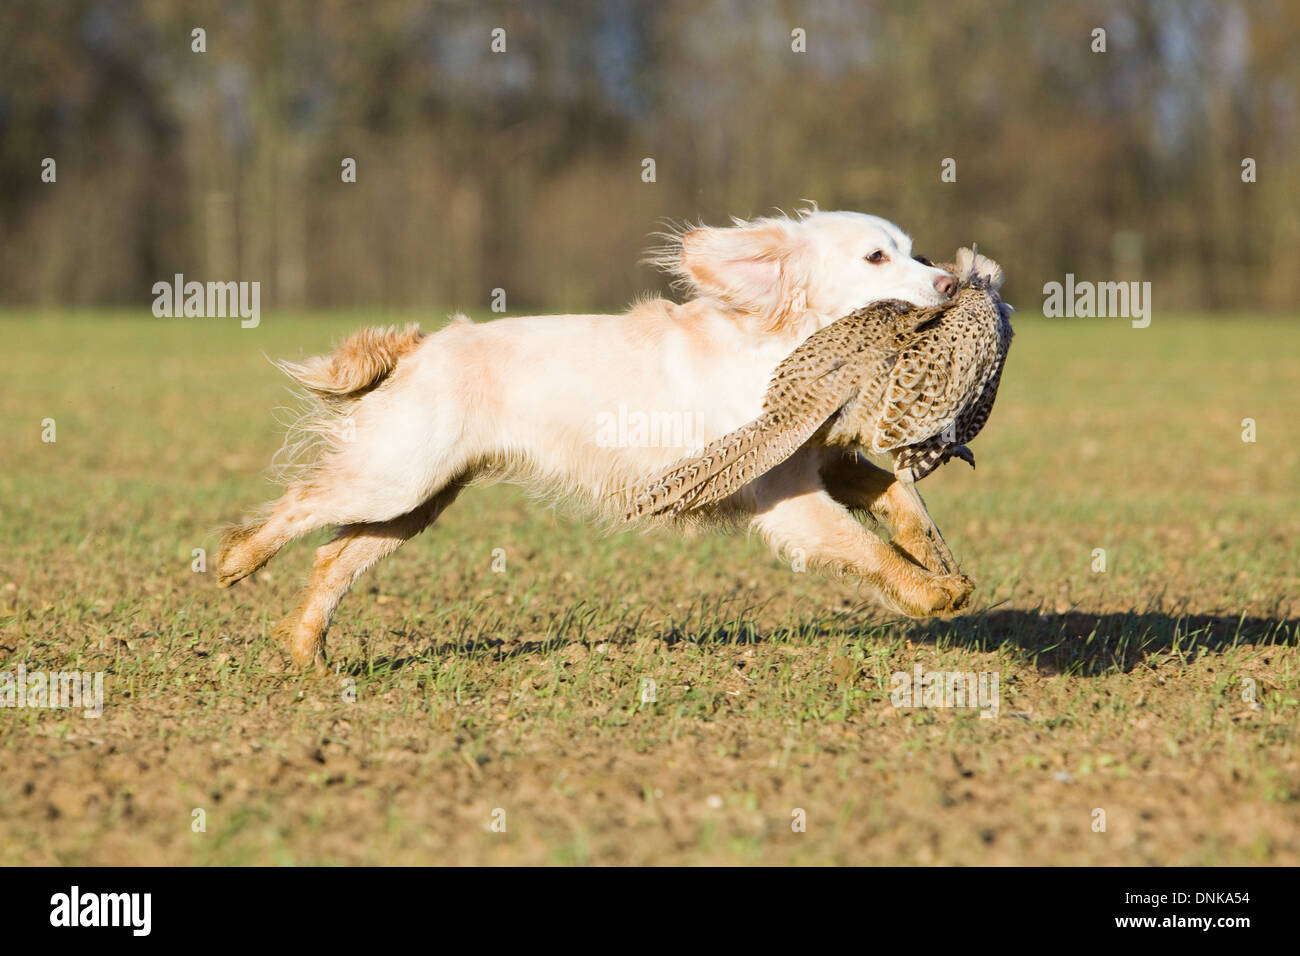 A Cocker Spaniel retrieving a shot pheasant on a pheasant shoot in England Stock Photo